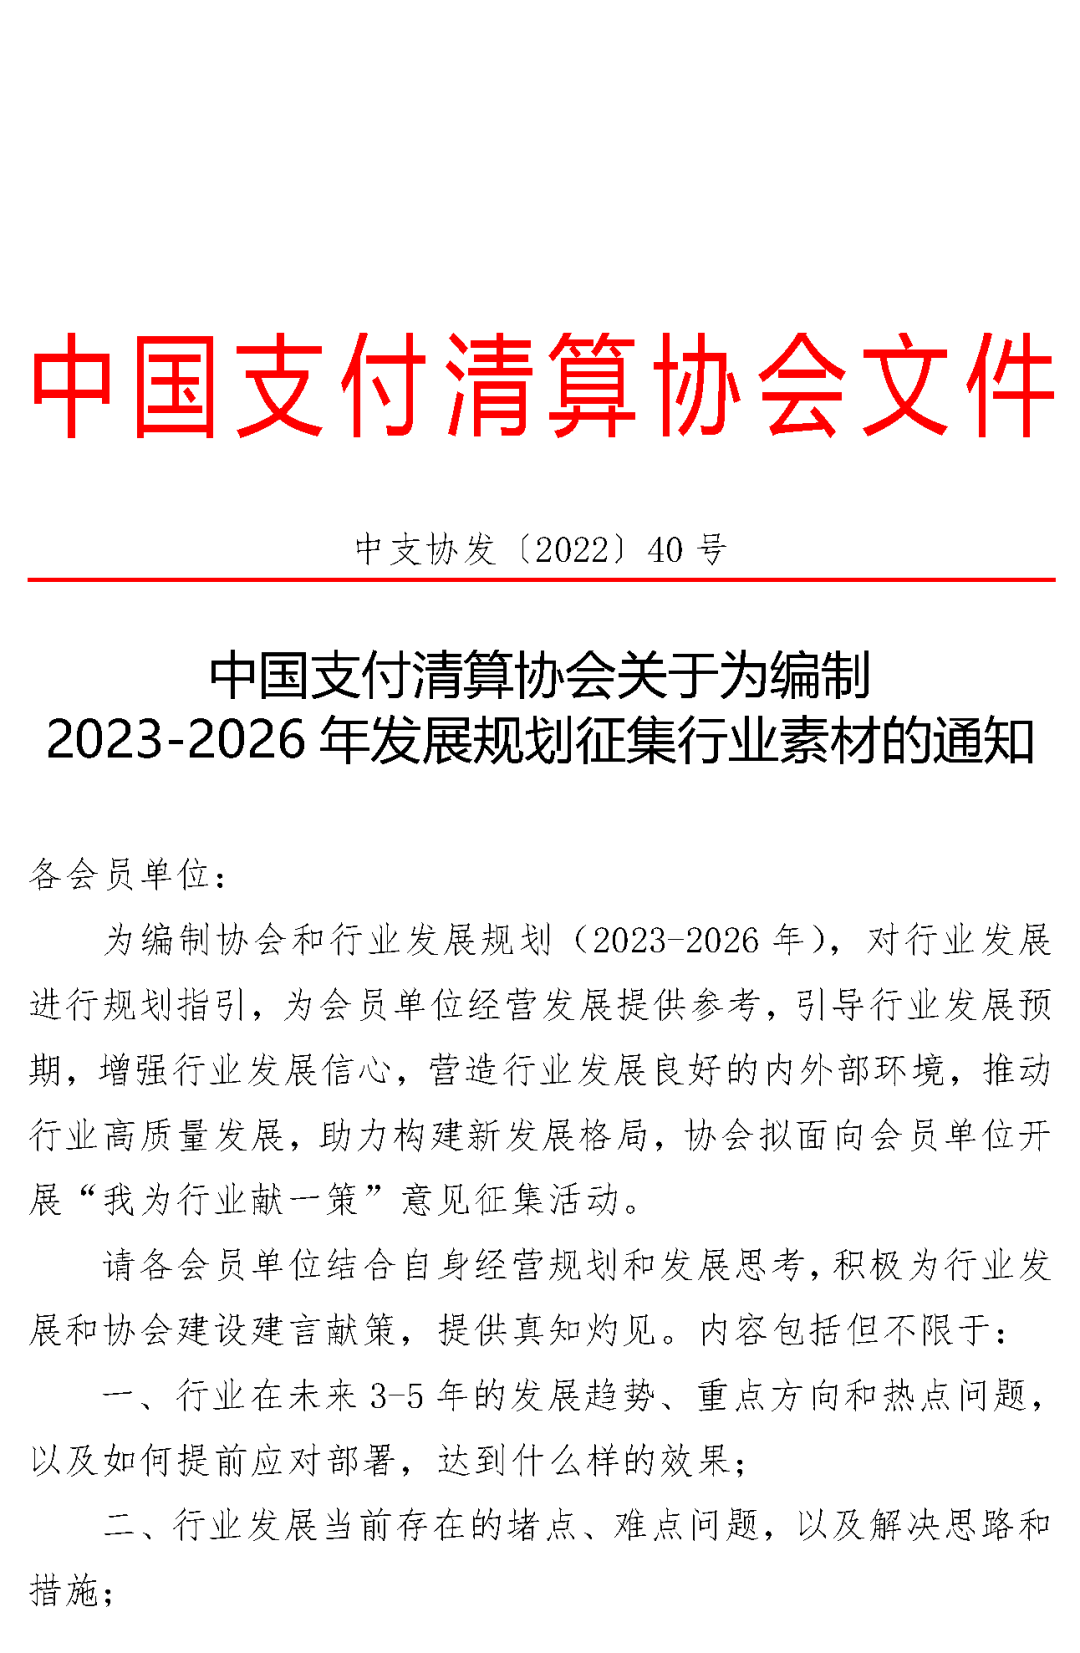 私人可以办理银行刷卡机吗_【公告】中国支付清算协会关于为编制2023-2026年发展规划征集行业素材的通知